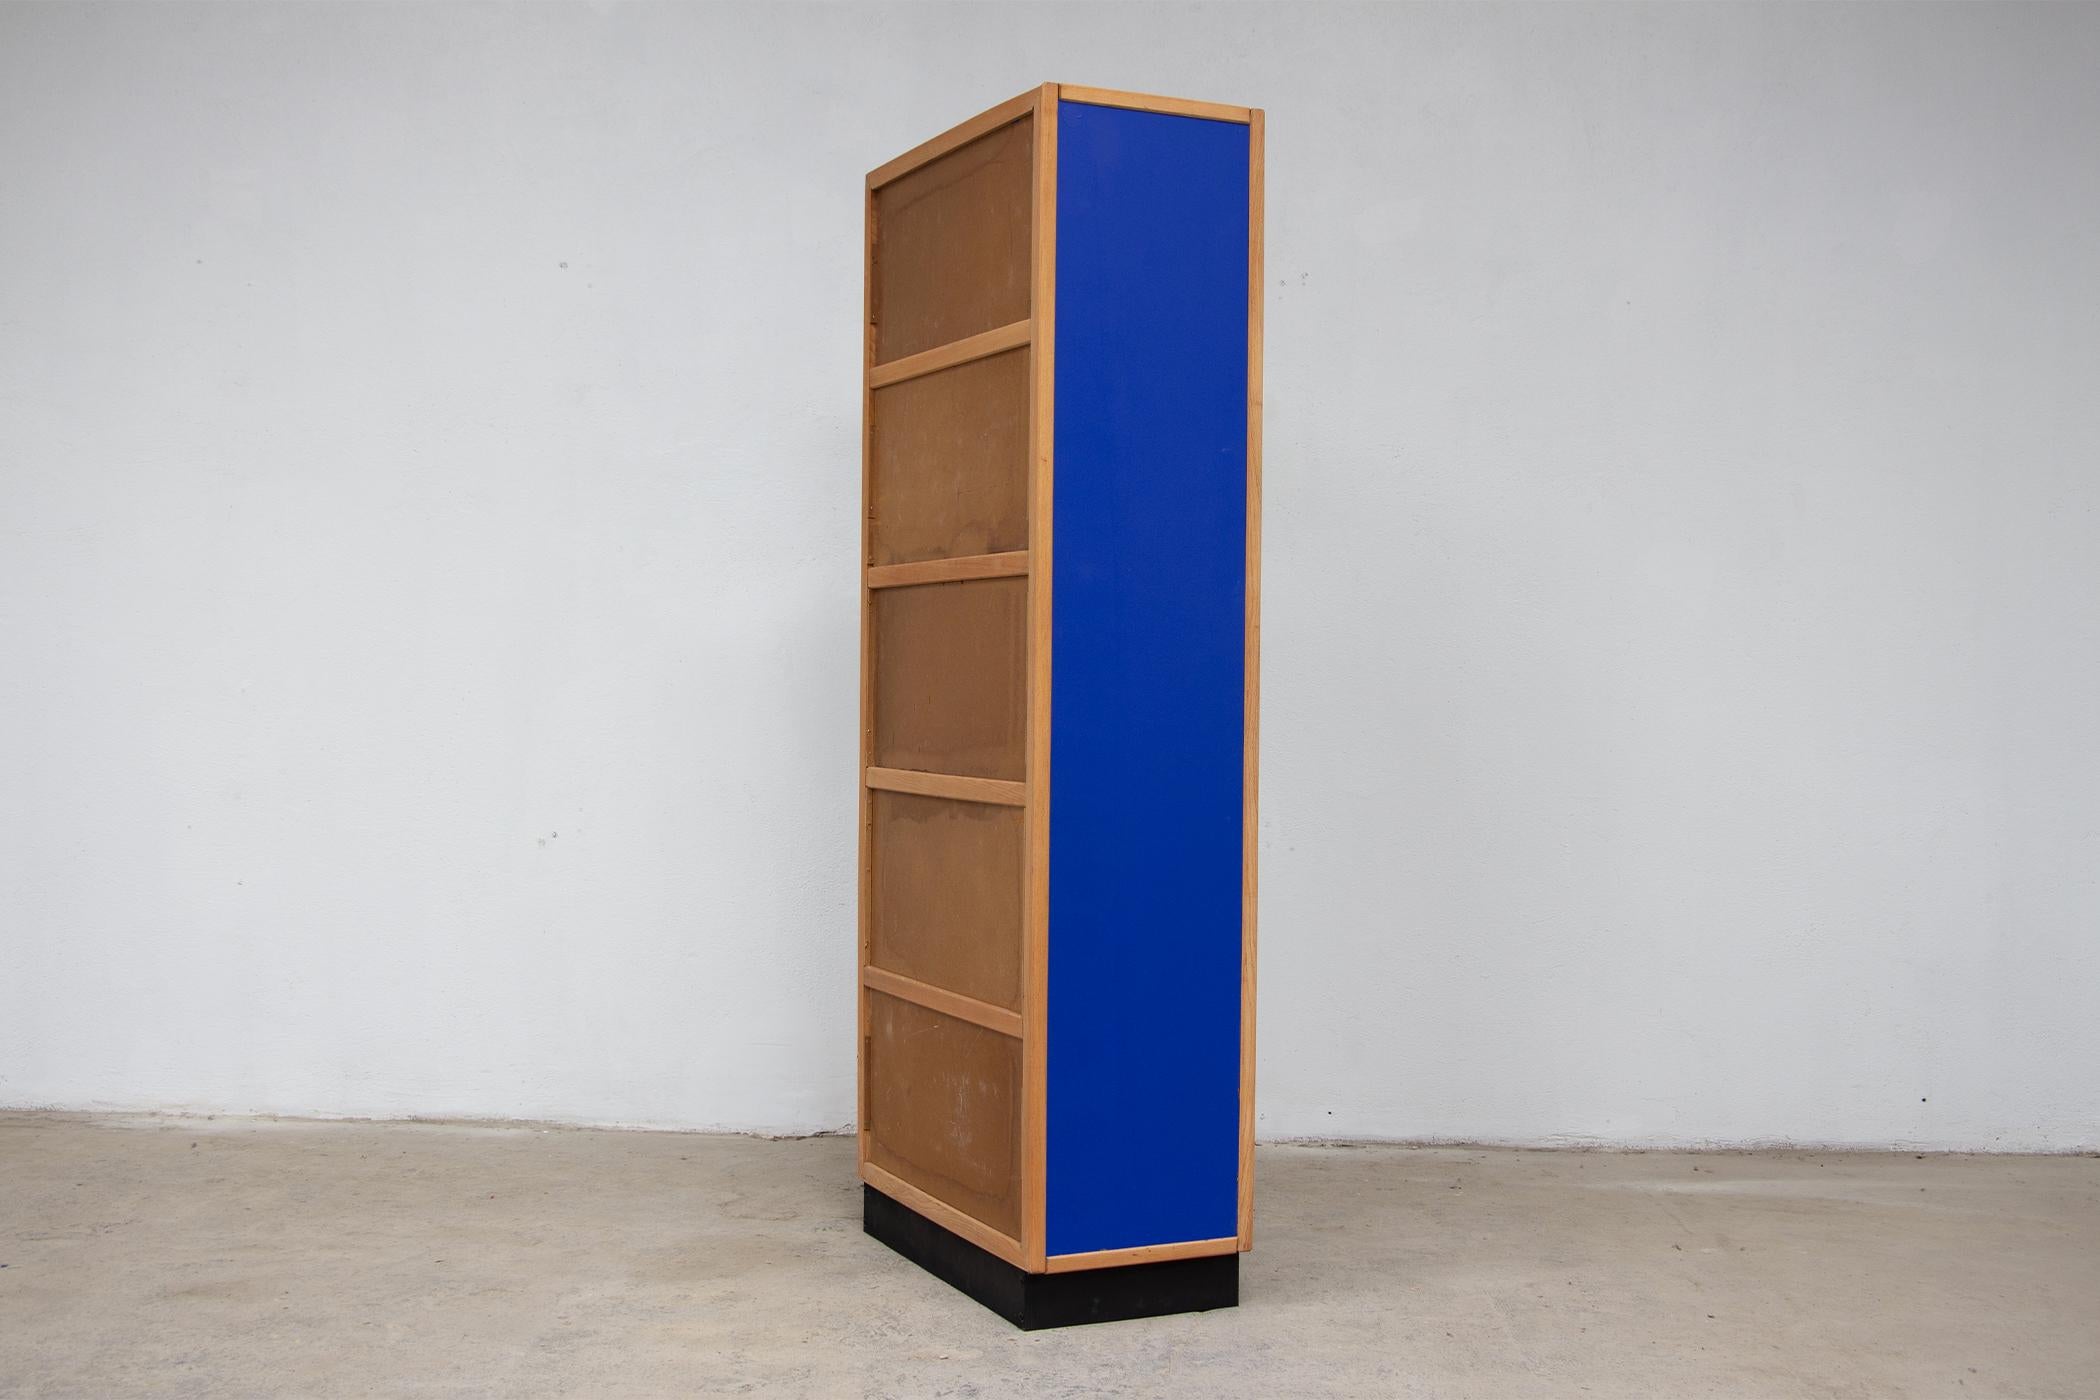 Vintage-Bücherregal aus den 60er Jahren des Designers und Verlegers André Sornay, berühmter Möbelschreiner aus Lyon und Meister des Art-déco-Möbels.
Gestempelt mit dem Sornay-Aufkleber.
Elektrisch blaue Paneele in Anlehnung an das Blau von Yves